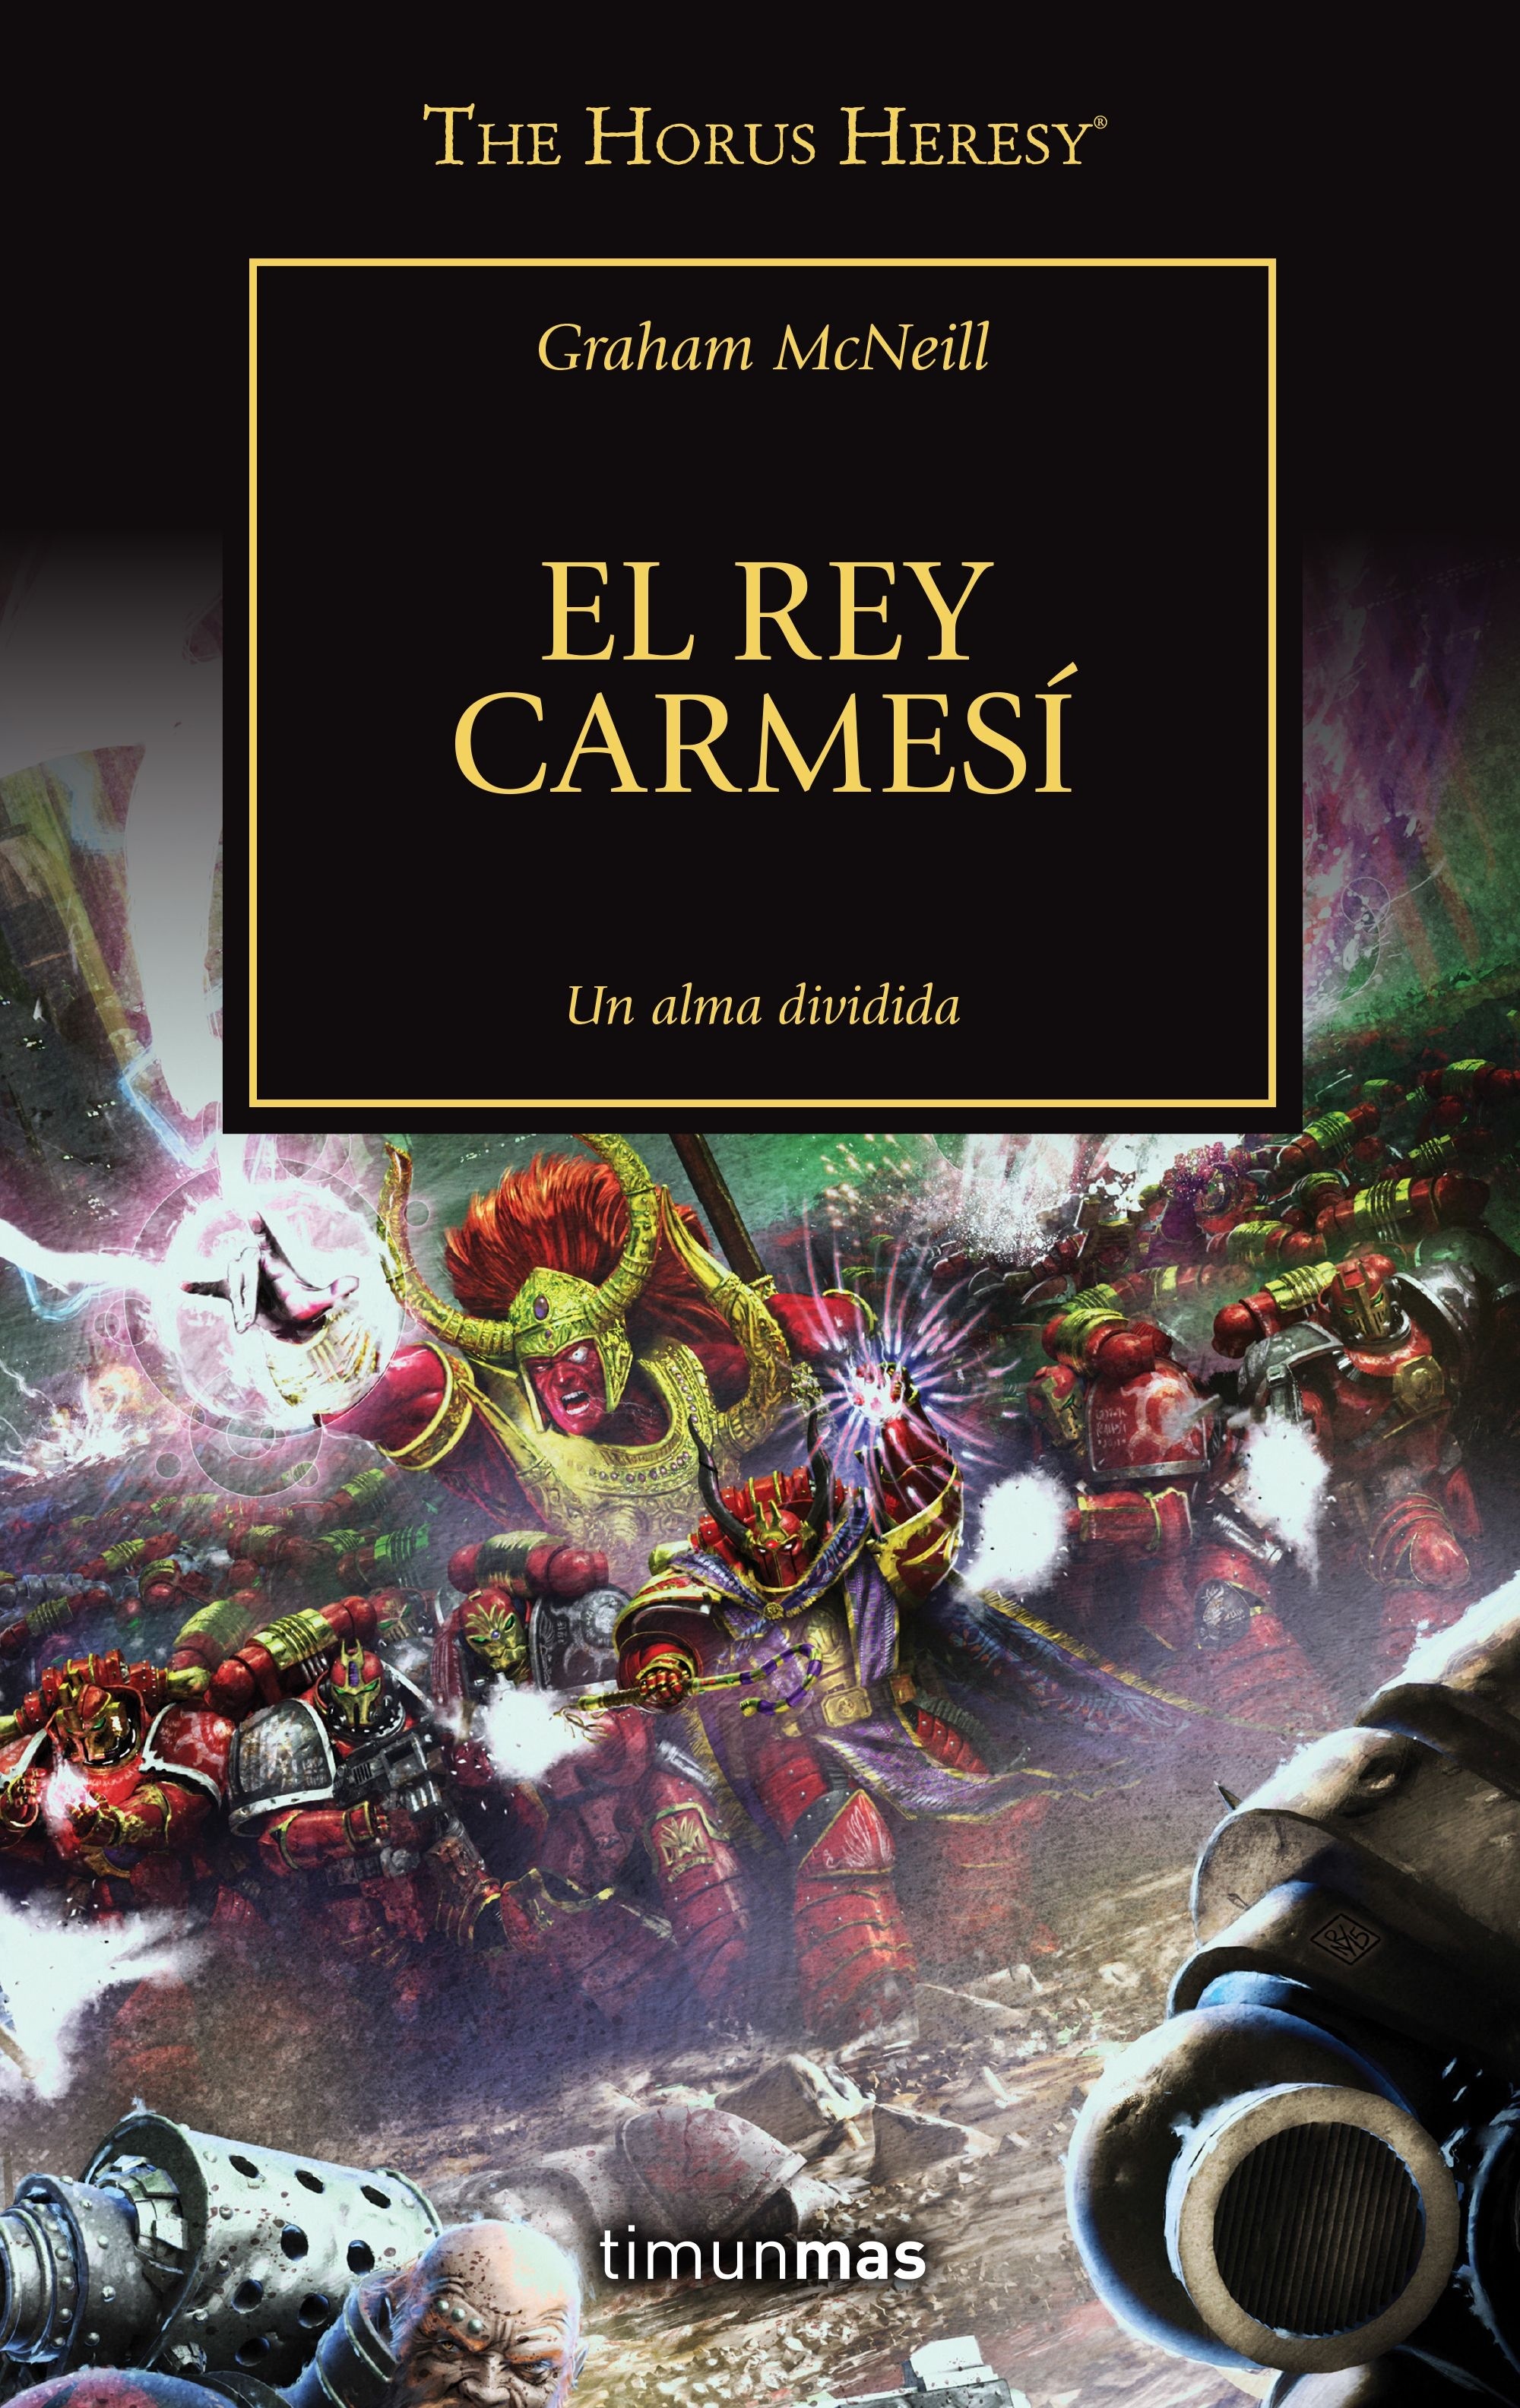 Rey Carmesí, El "La Herejía de Horus 44"